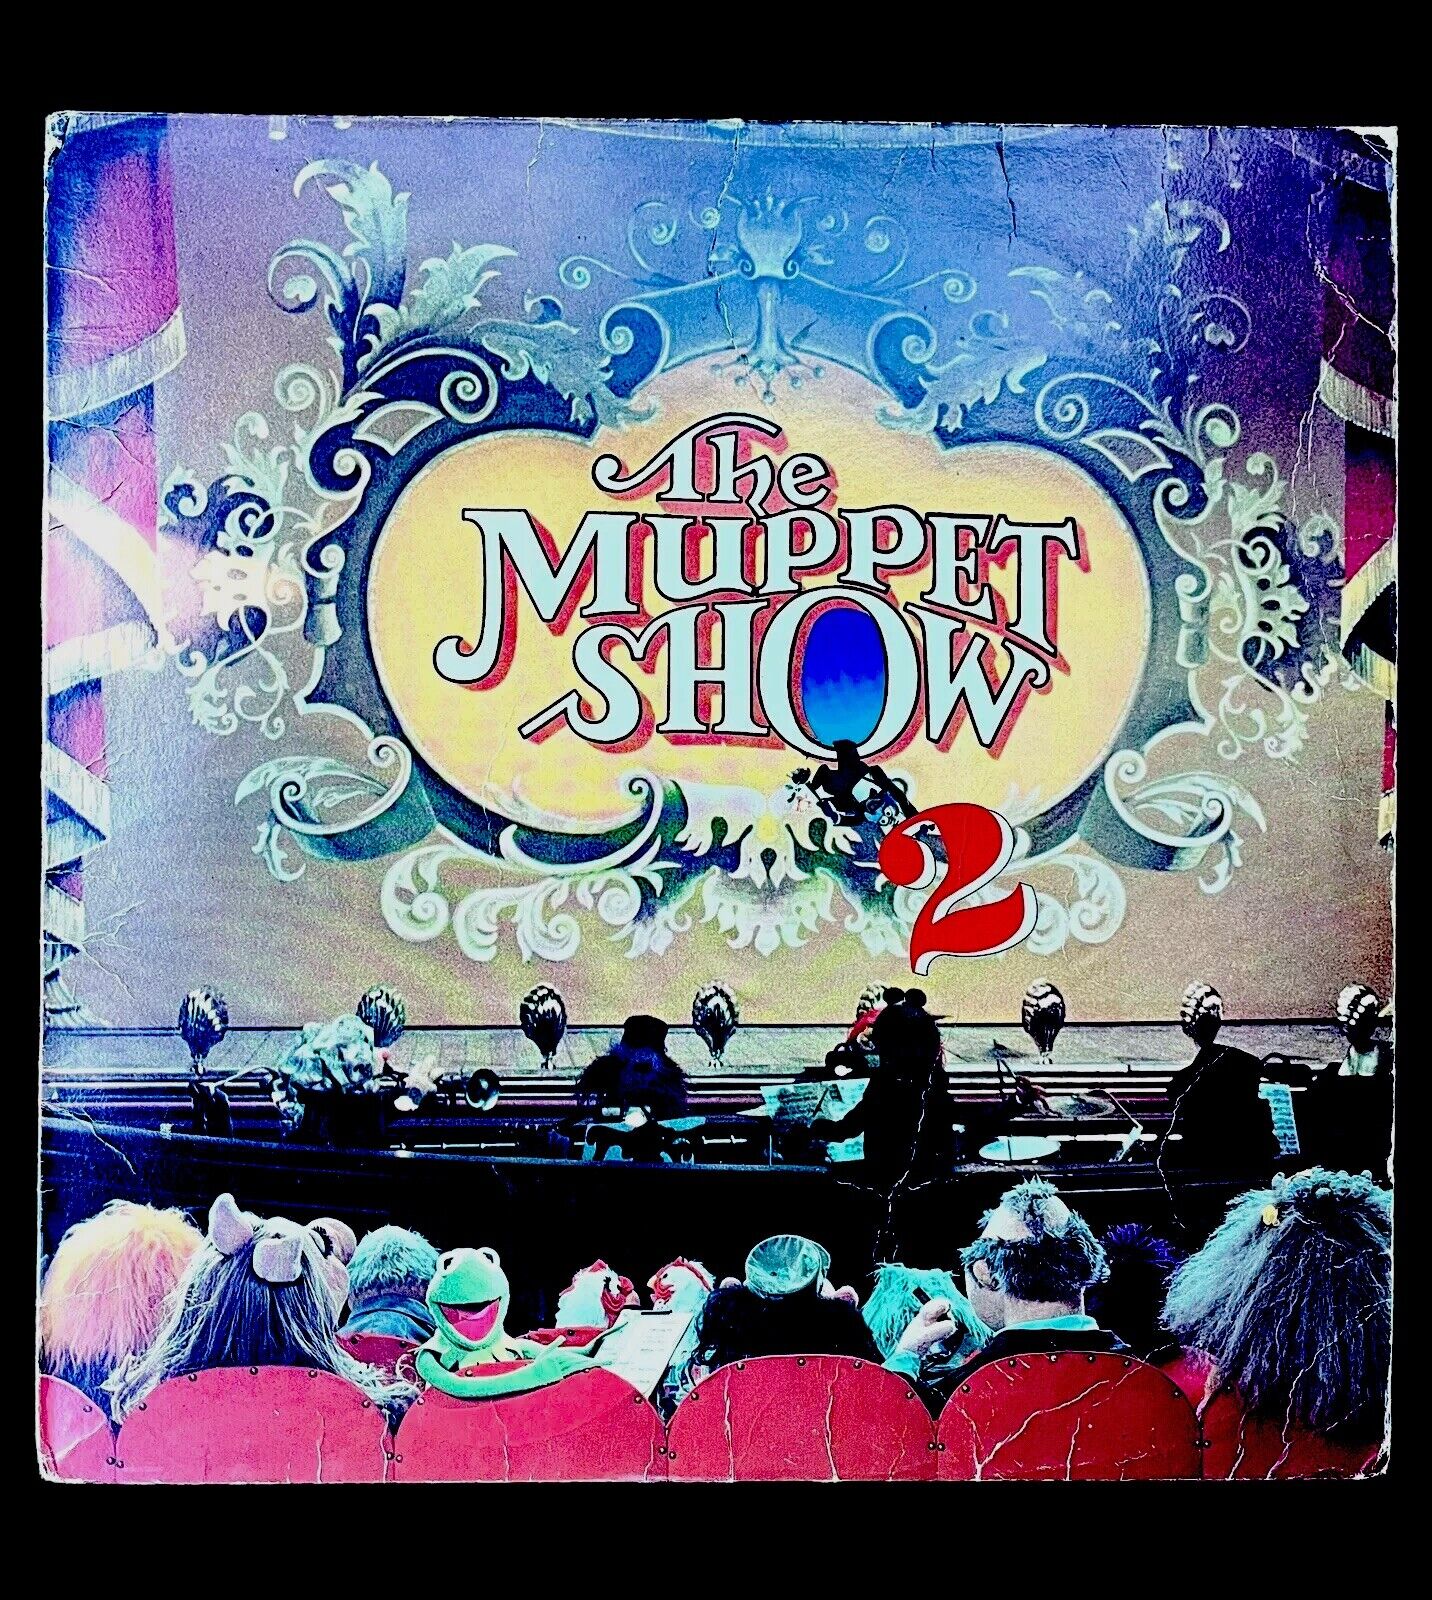 THE MUPPET SHOW 2 Original Sound Track LP ARISTA AB 4192 rare 